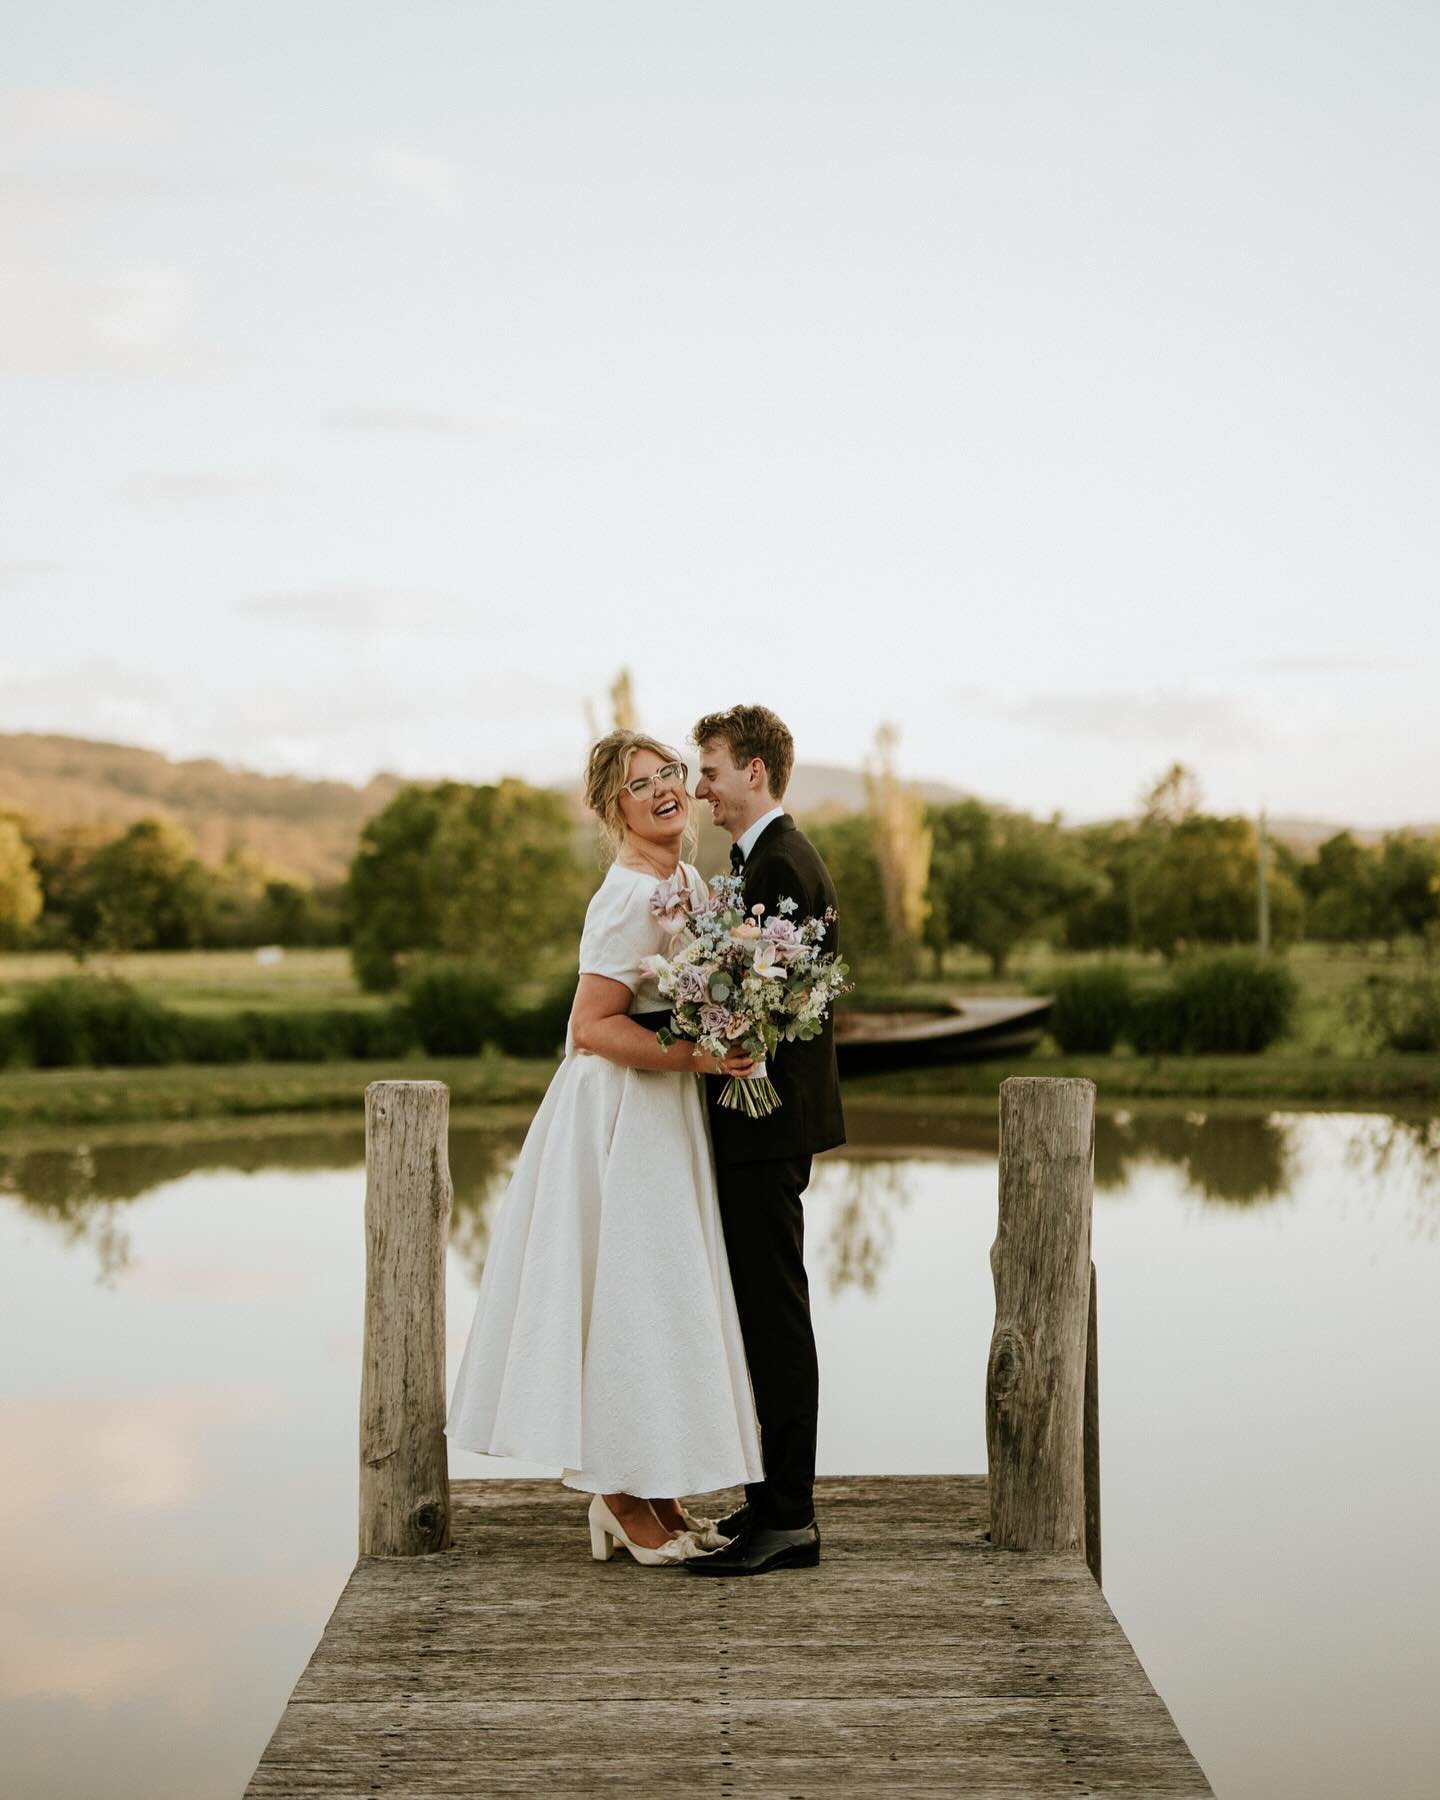 Chelsea and Jordan and a collection of joyful moments ☺️

#berrywedding #thehomesteadberry #weddingphotography #journalisticweddingphotography #gardenwedding